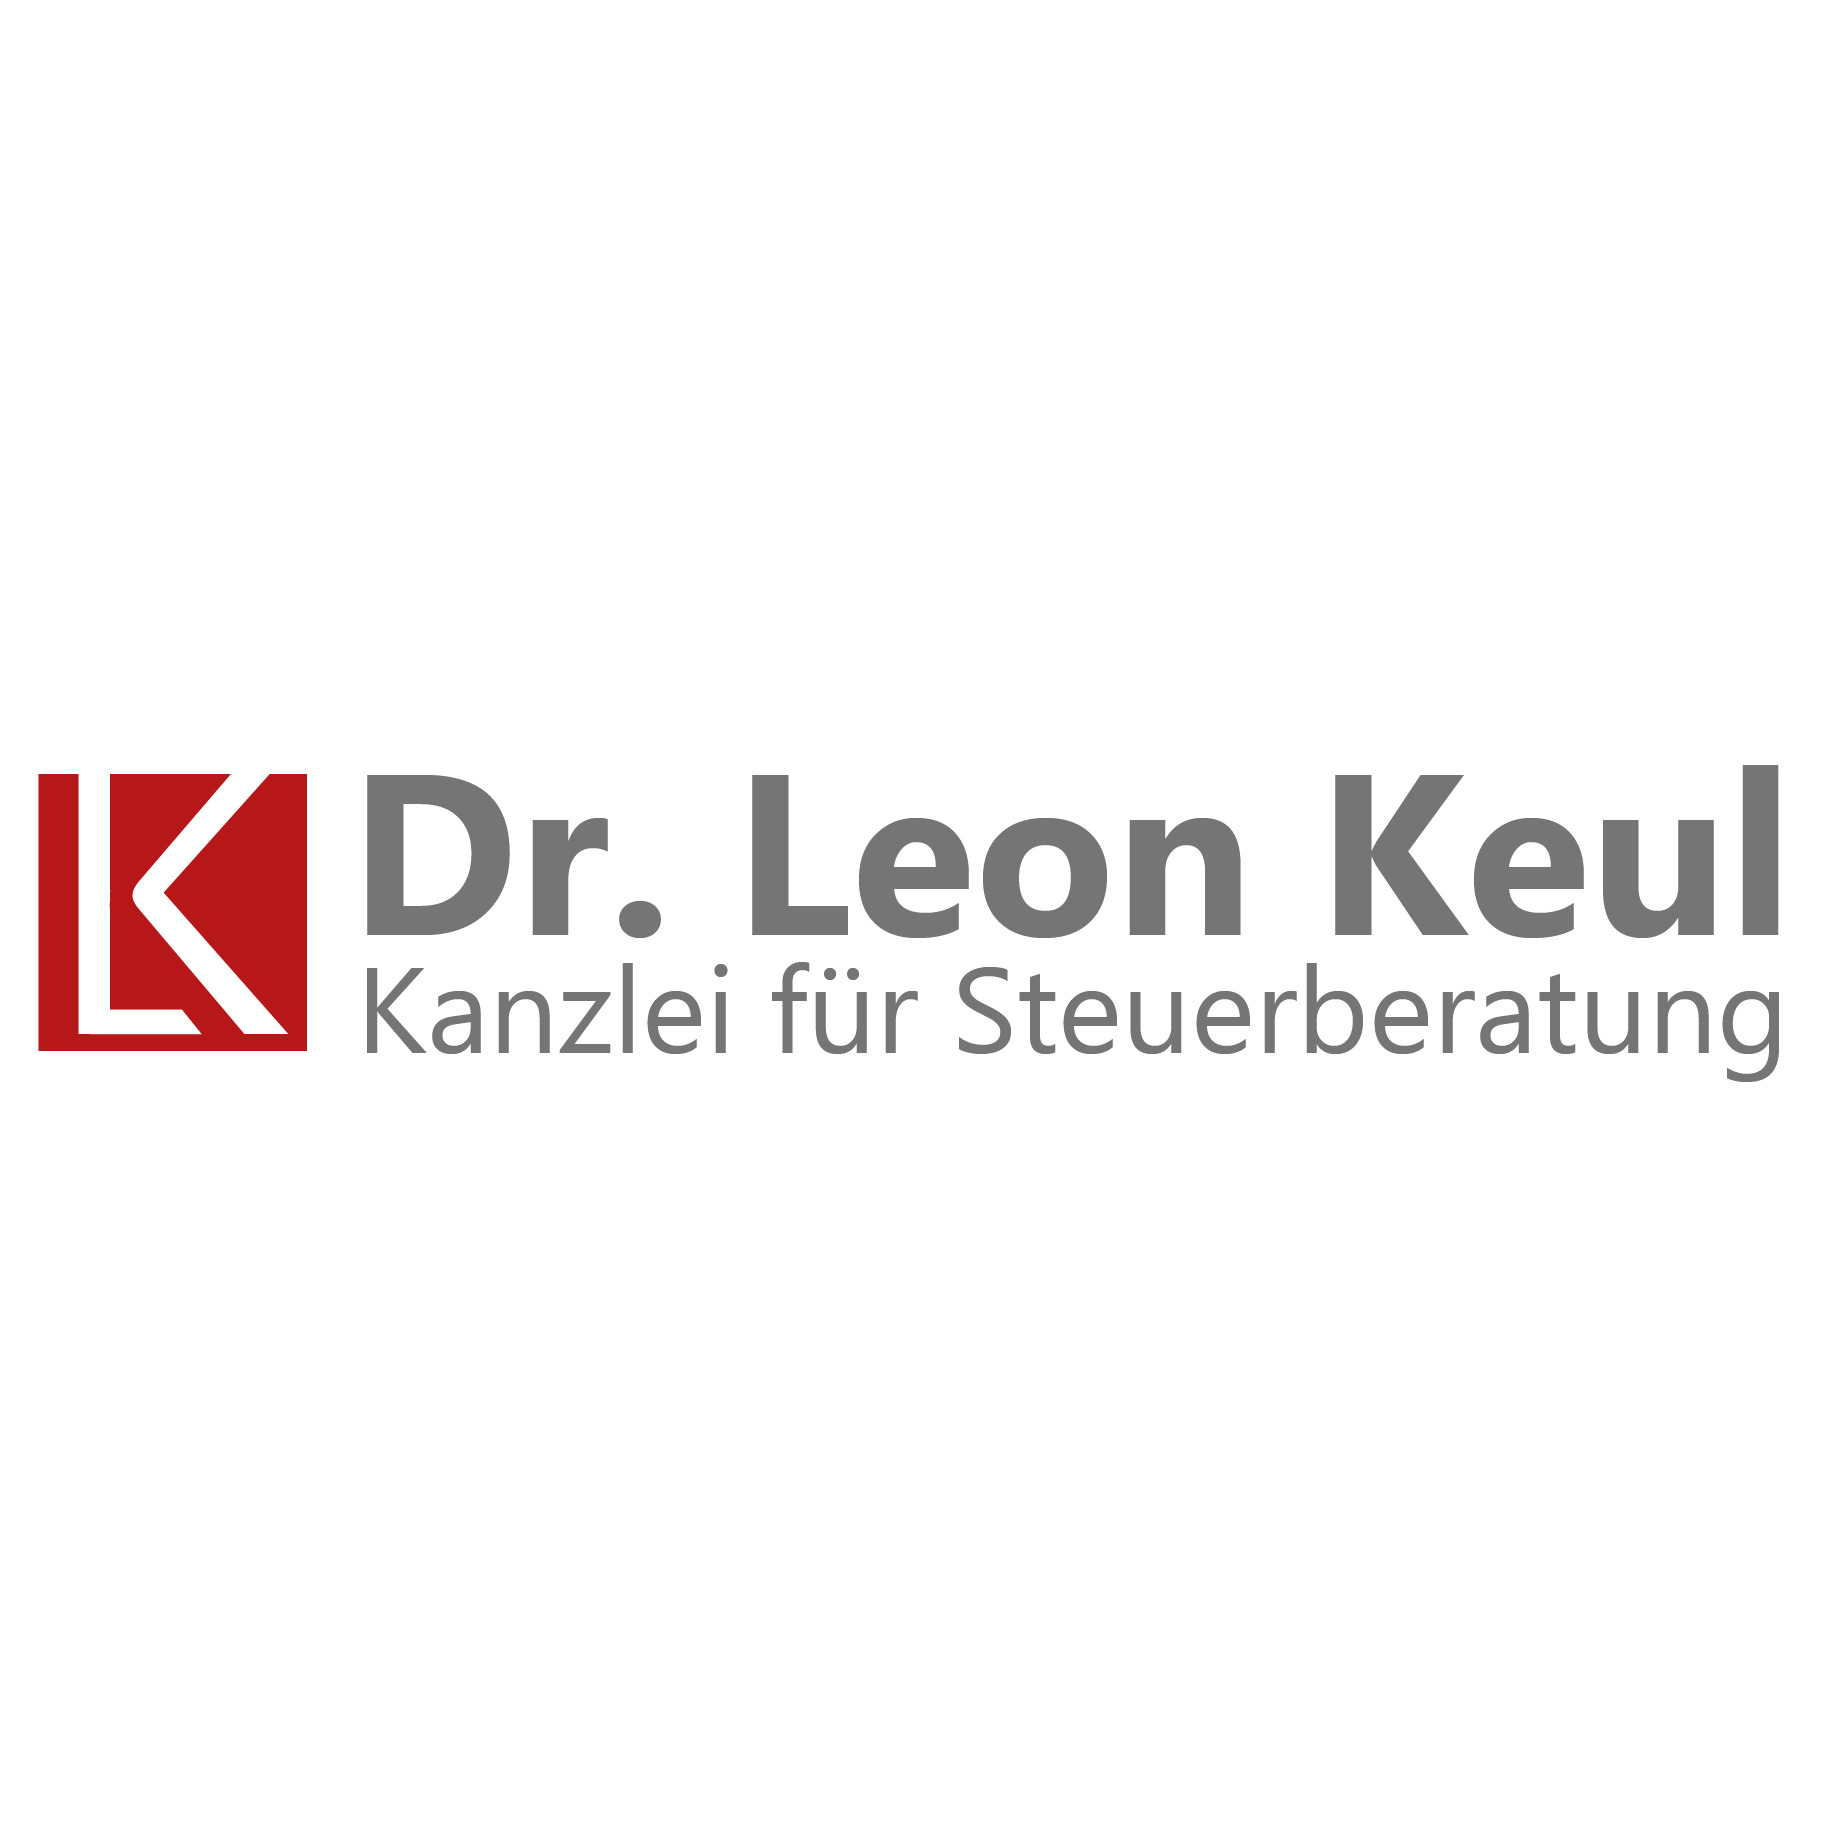 Dr. Leon Keul - Kanzlei für Steuerberatung Logo